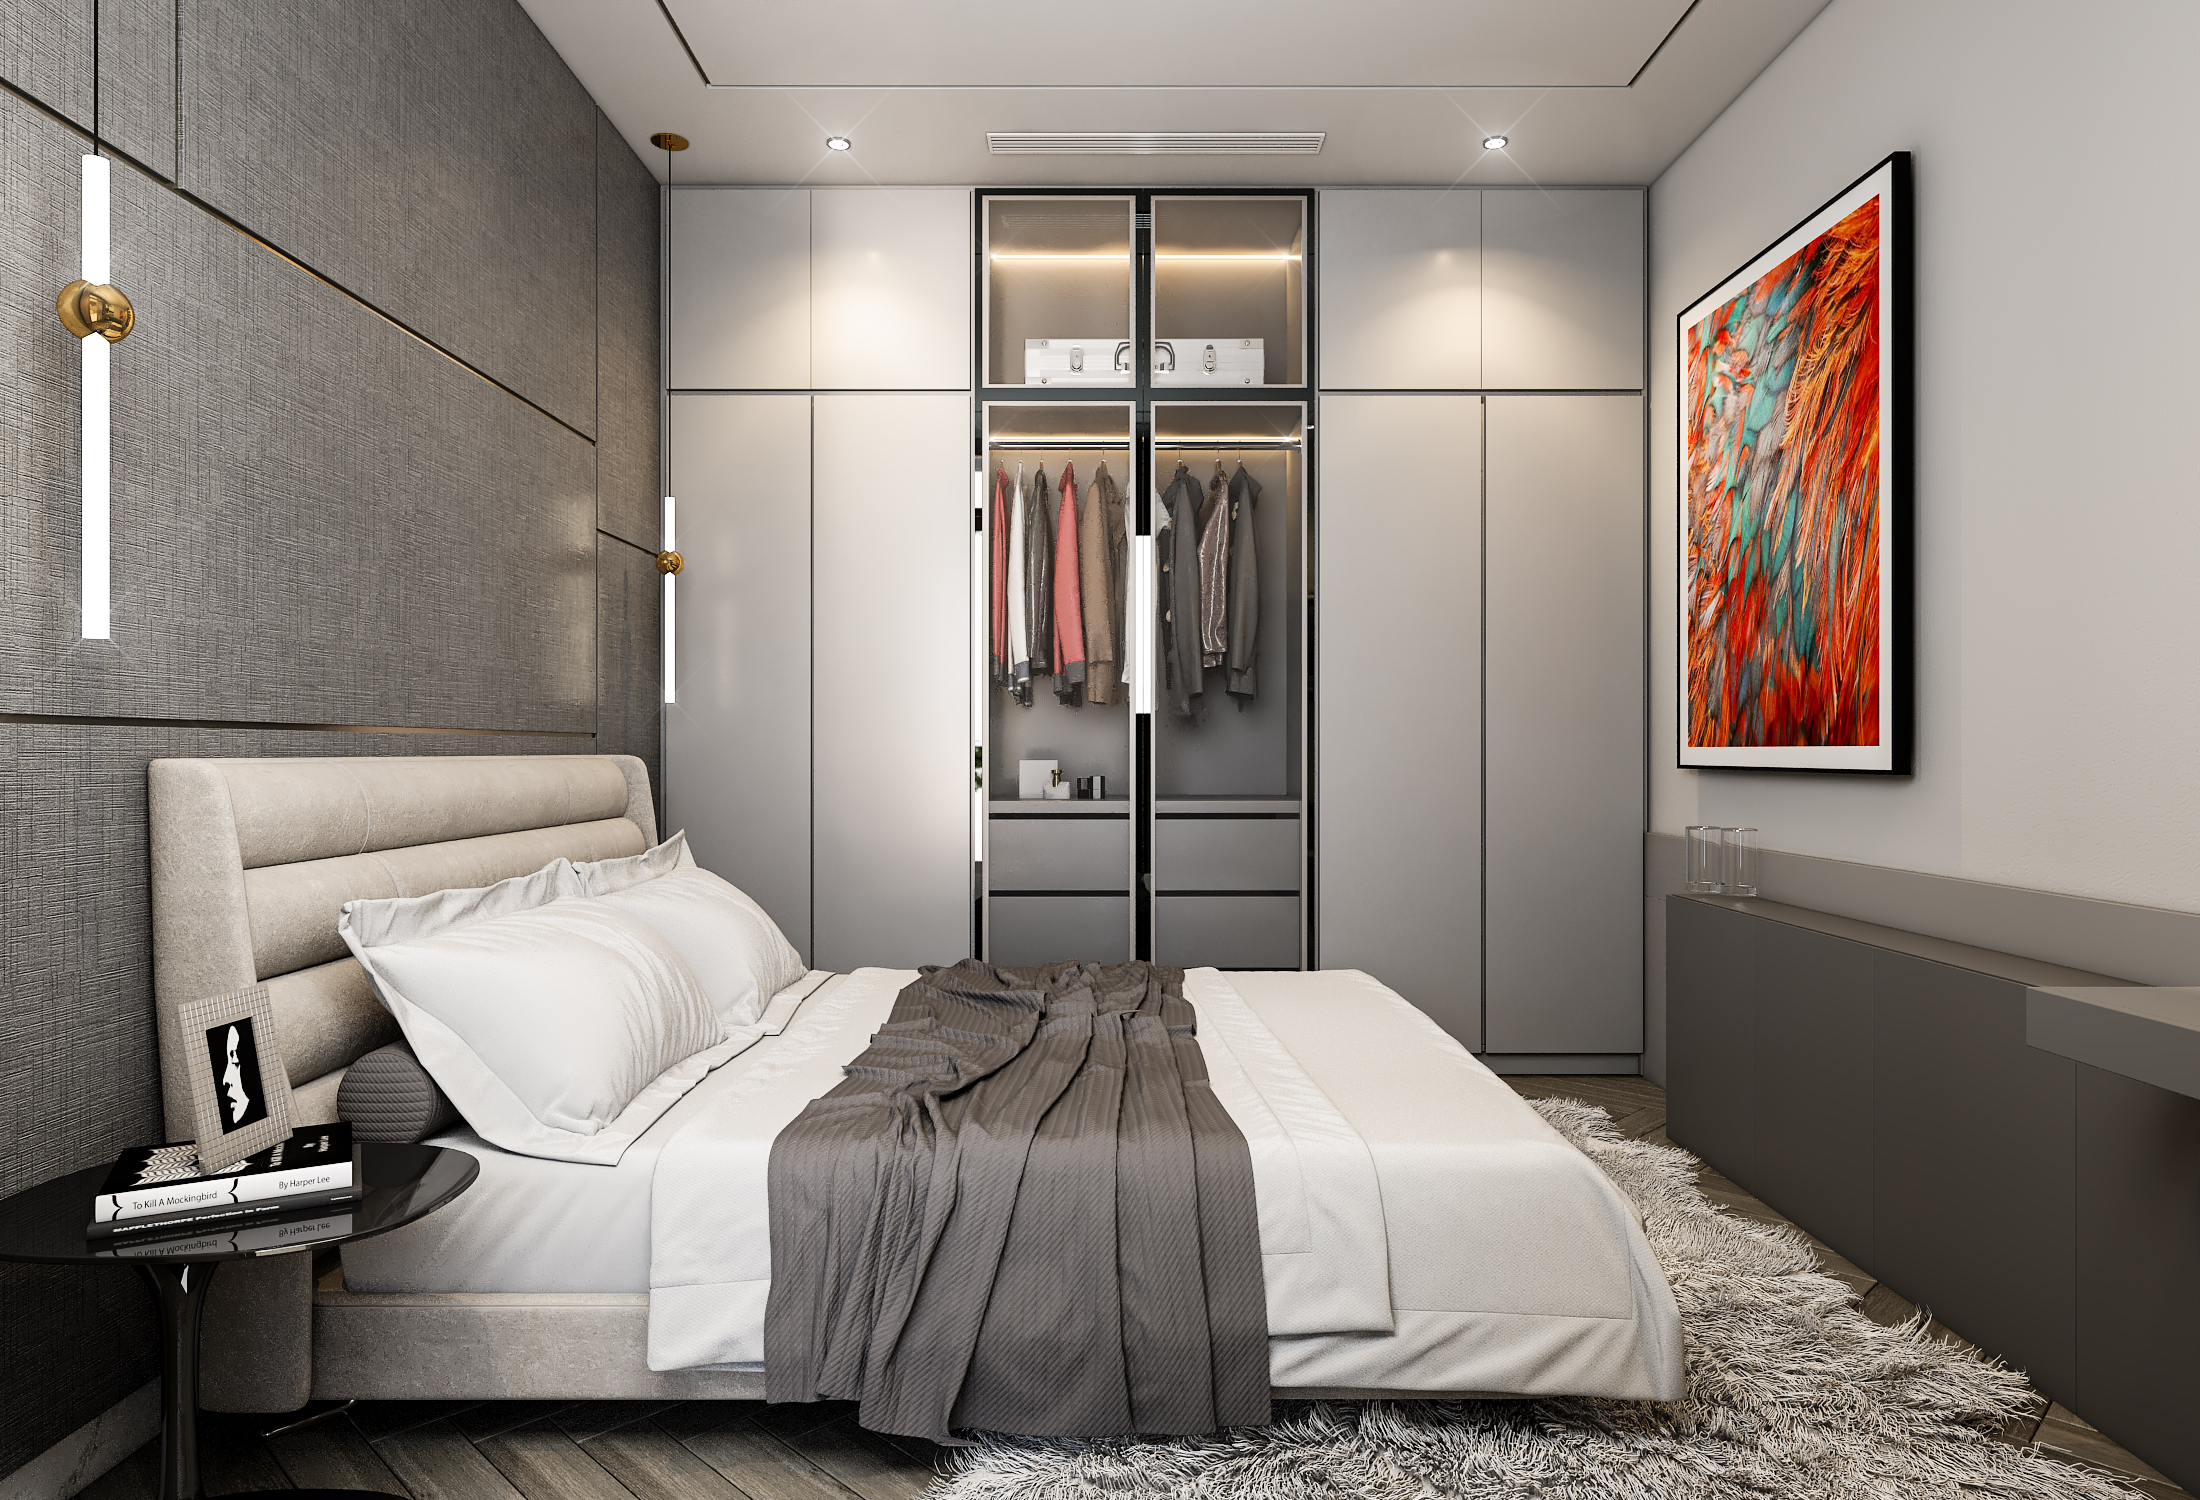 Lưu ý về lựa chọn phong cách thiết kế phòng ngủ